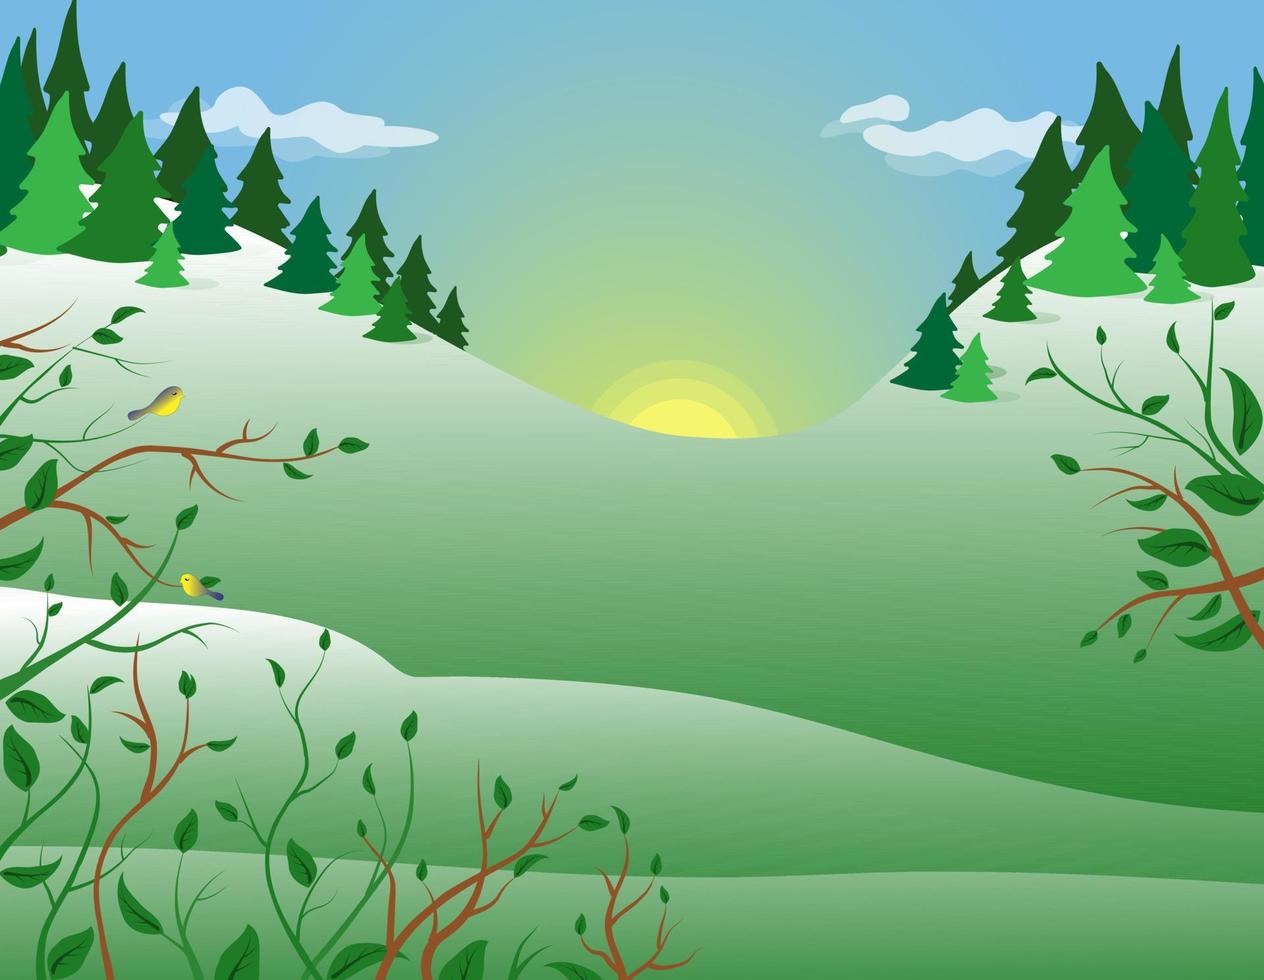 ilustração em vetor de uma paisagem de floresta de primavera com árvores, colinas e o sol nascente.